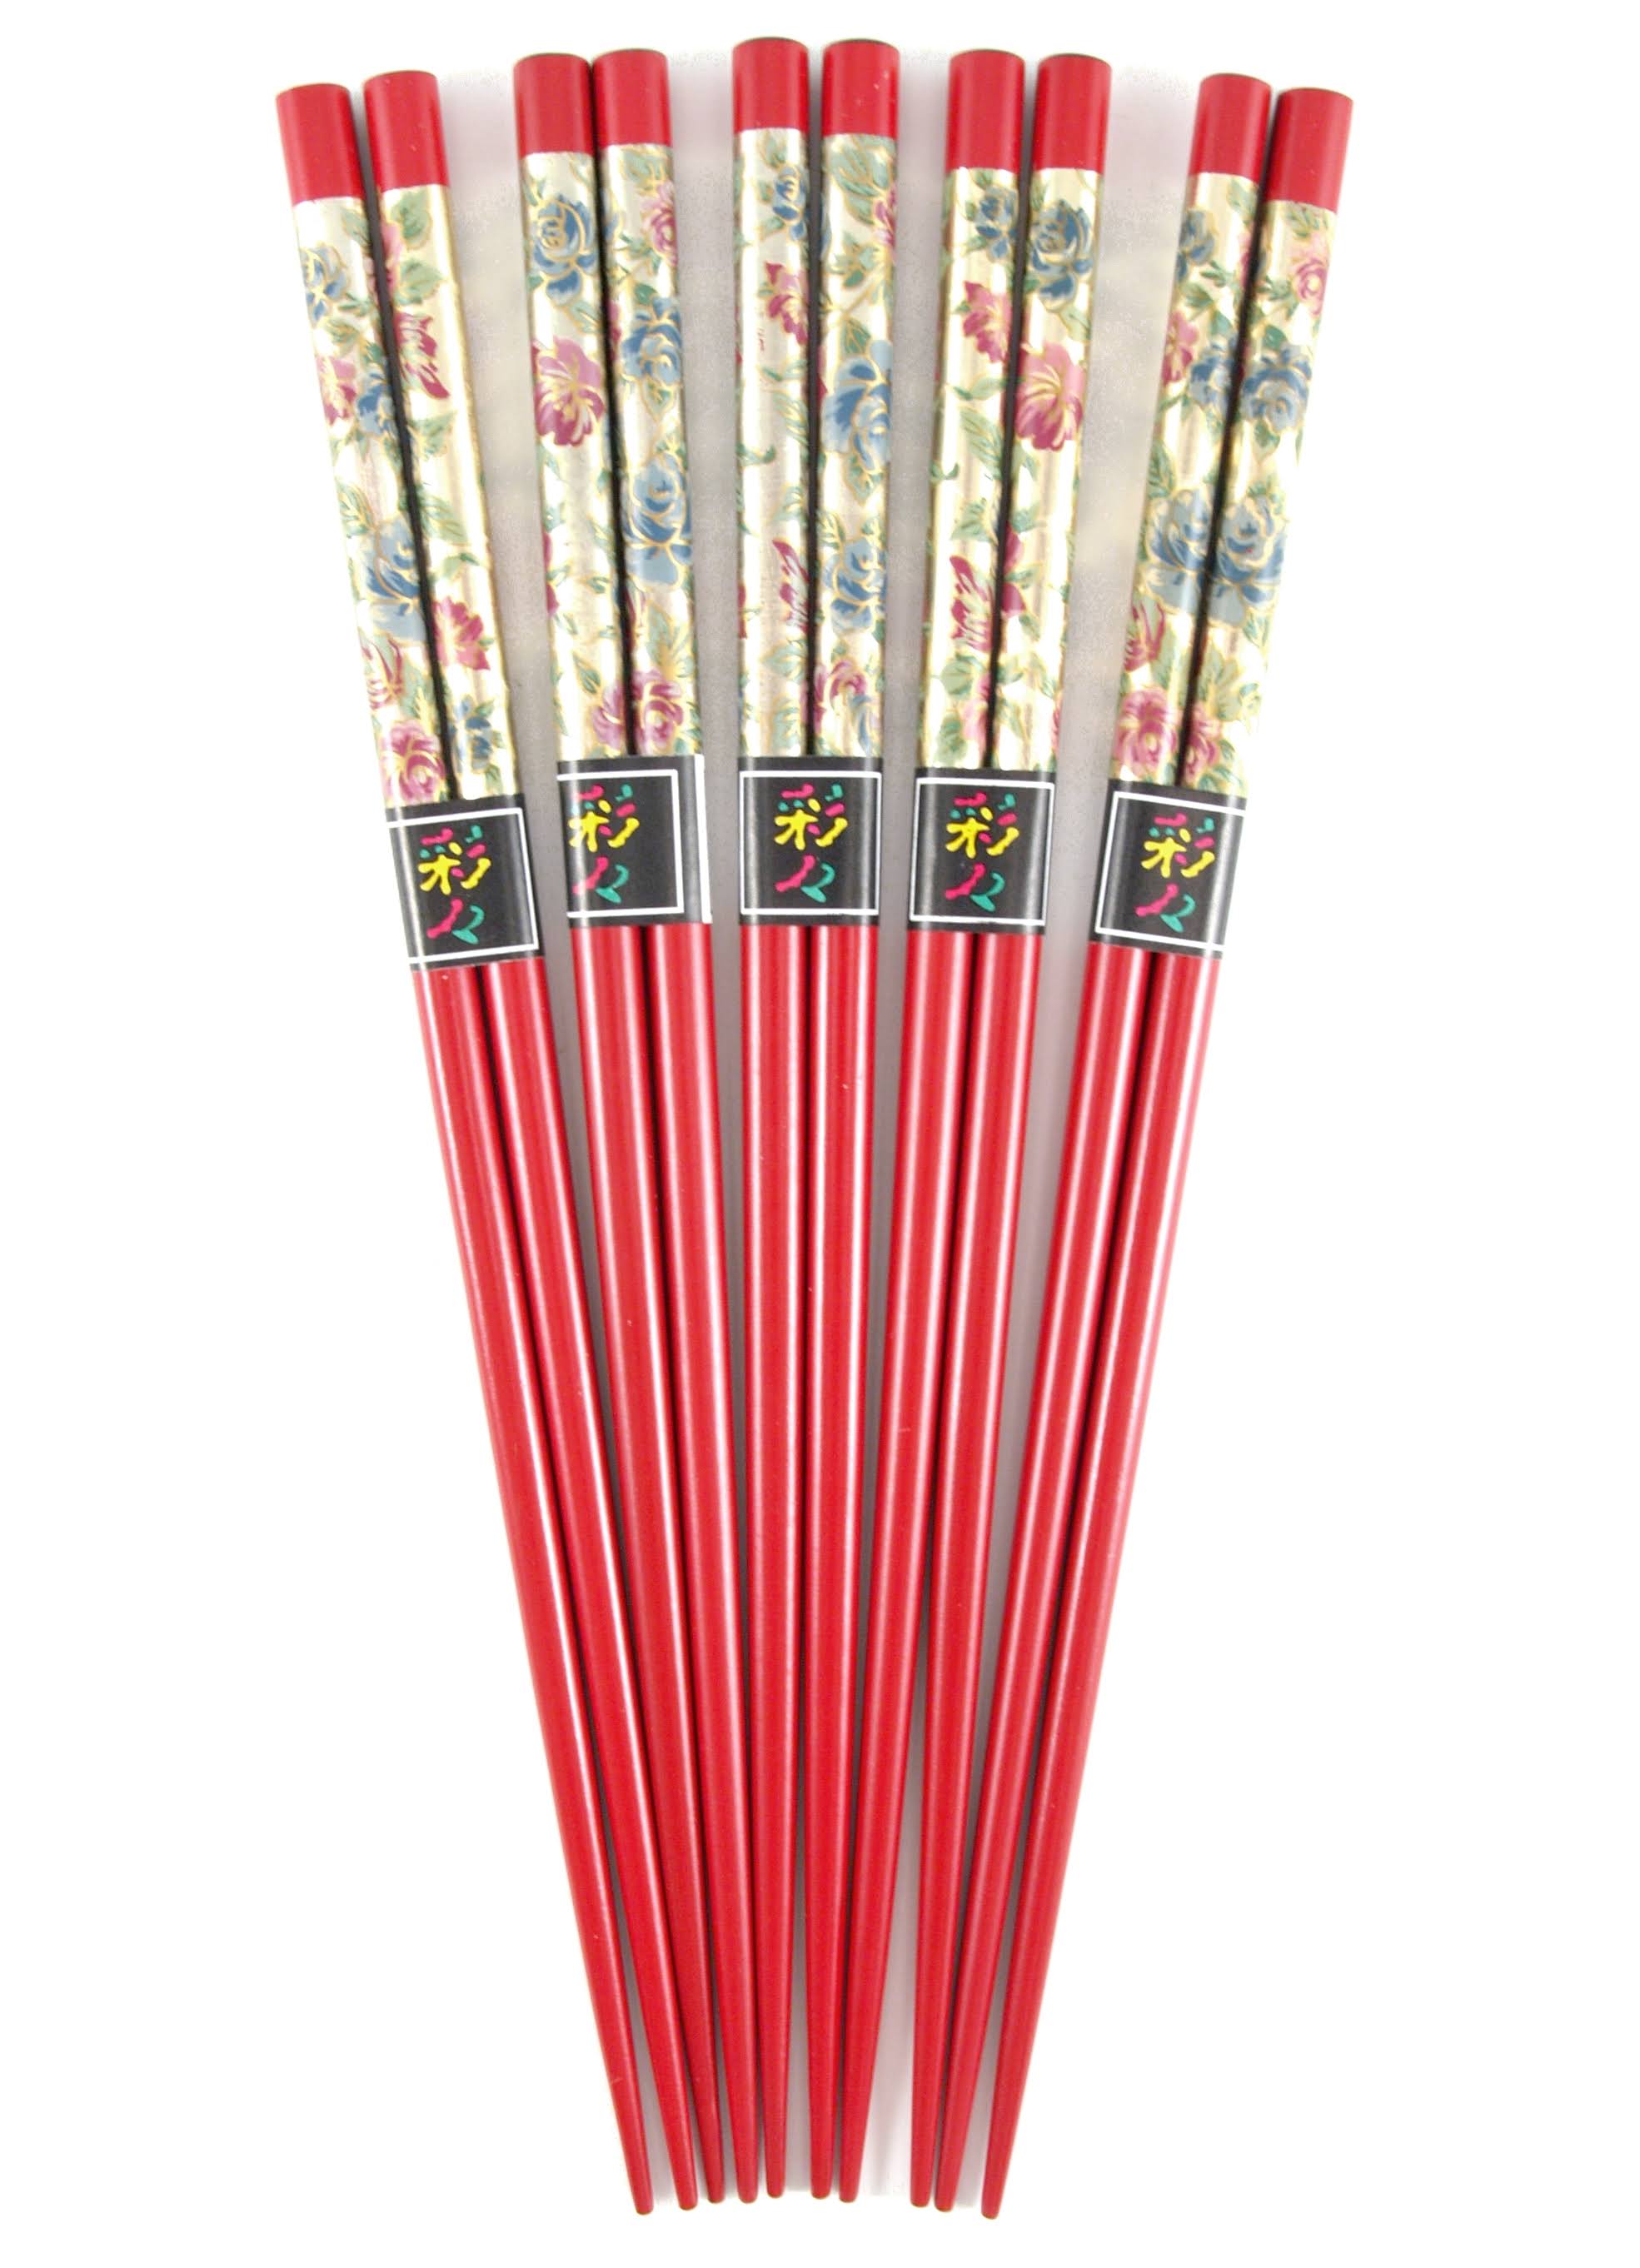 BigKitchen Gold Flowers Bamboo Design Wood Chopsticks Asian 5 Sets